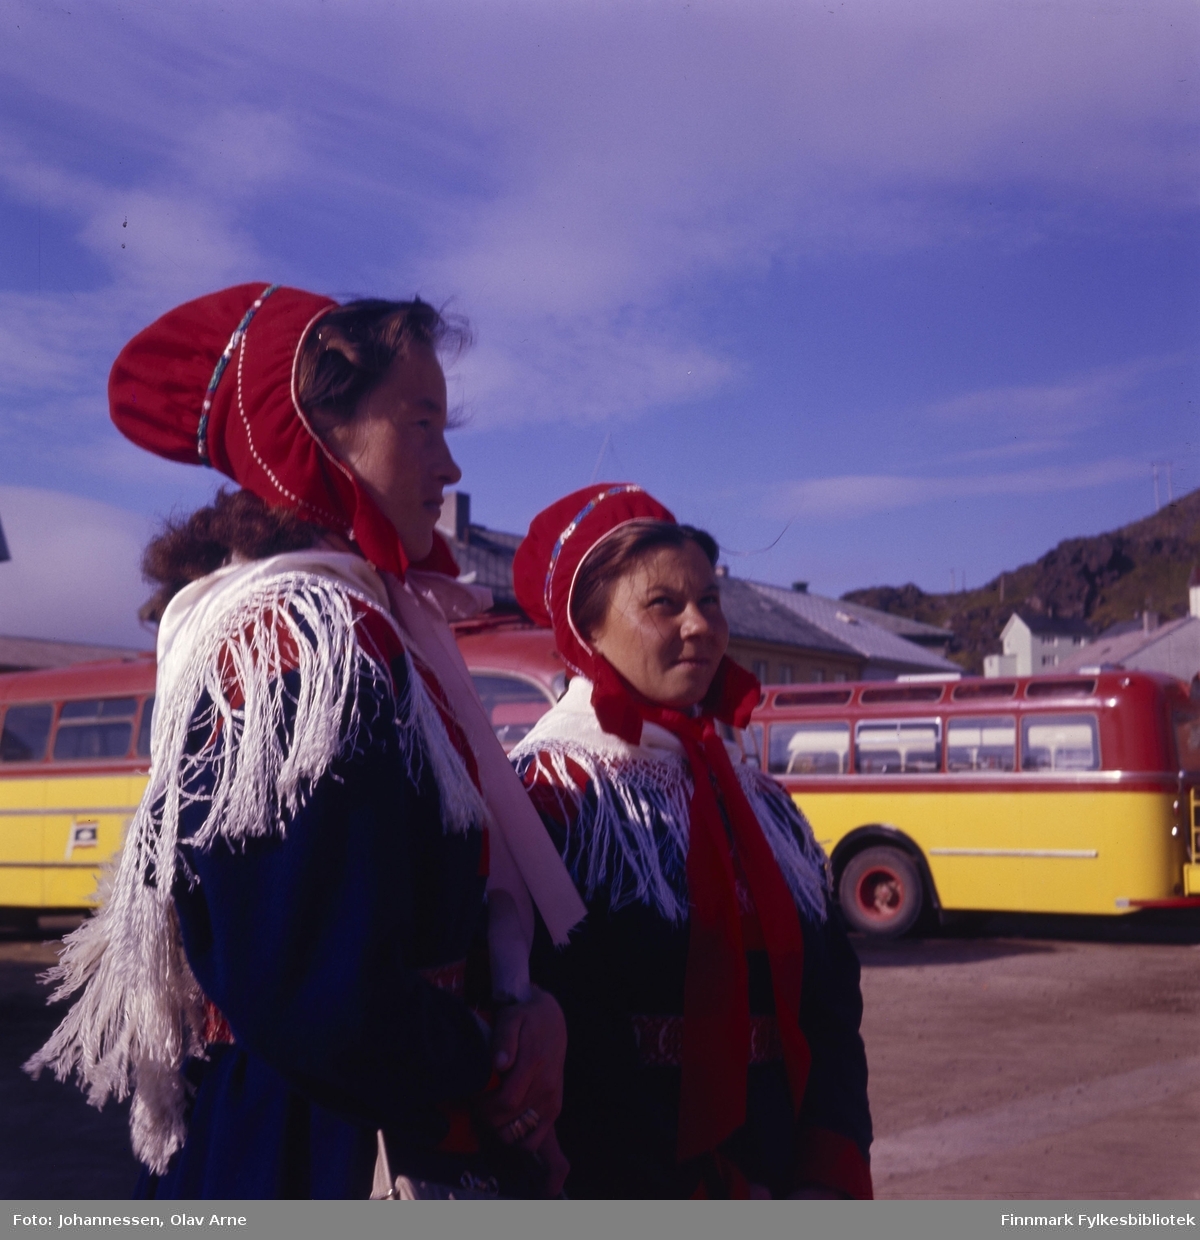 To samiske kvinner i kofte. Bak ser man flere gule og røde busser som var eid av Finnmark Fylkesrederi FFR

Foto trolig tatt på 1960/70-tallet